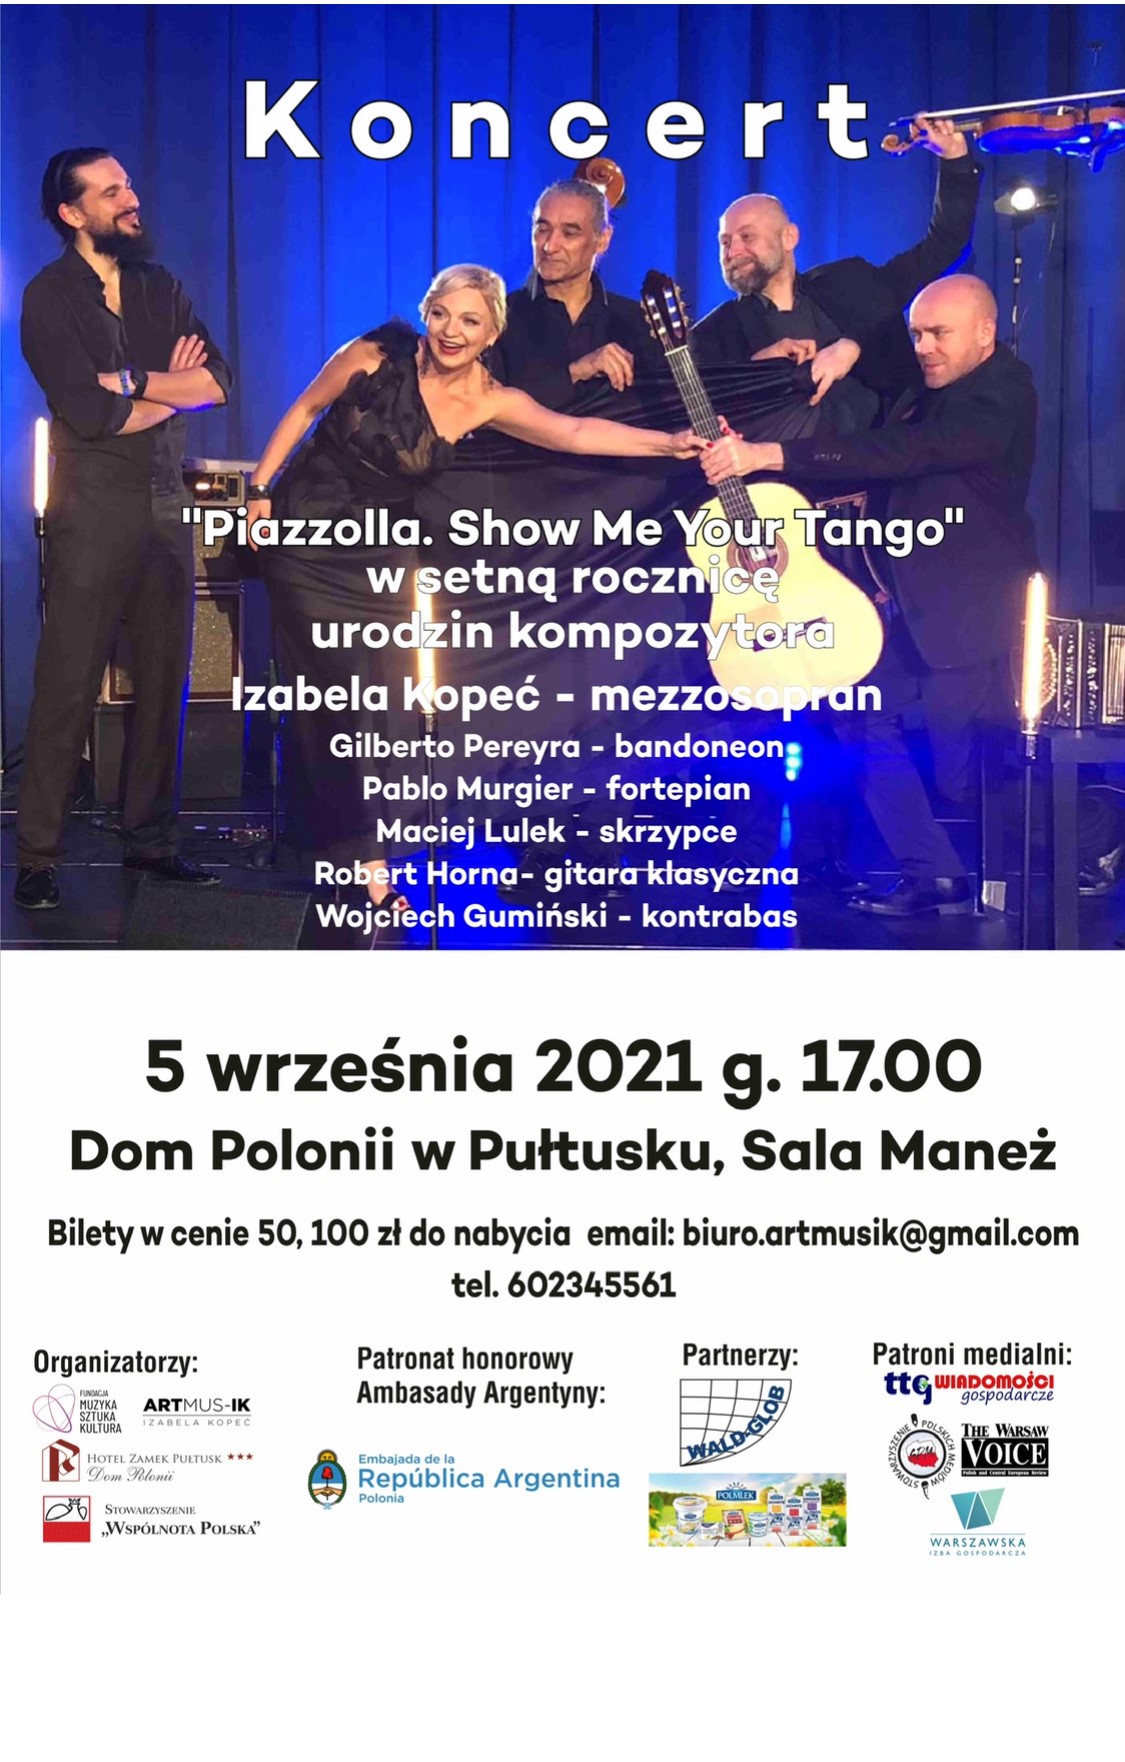 Koncert „Piazzolla. Show Me Your Tango” w setną rocznicę urodzin kompozytora